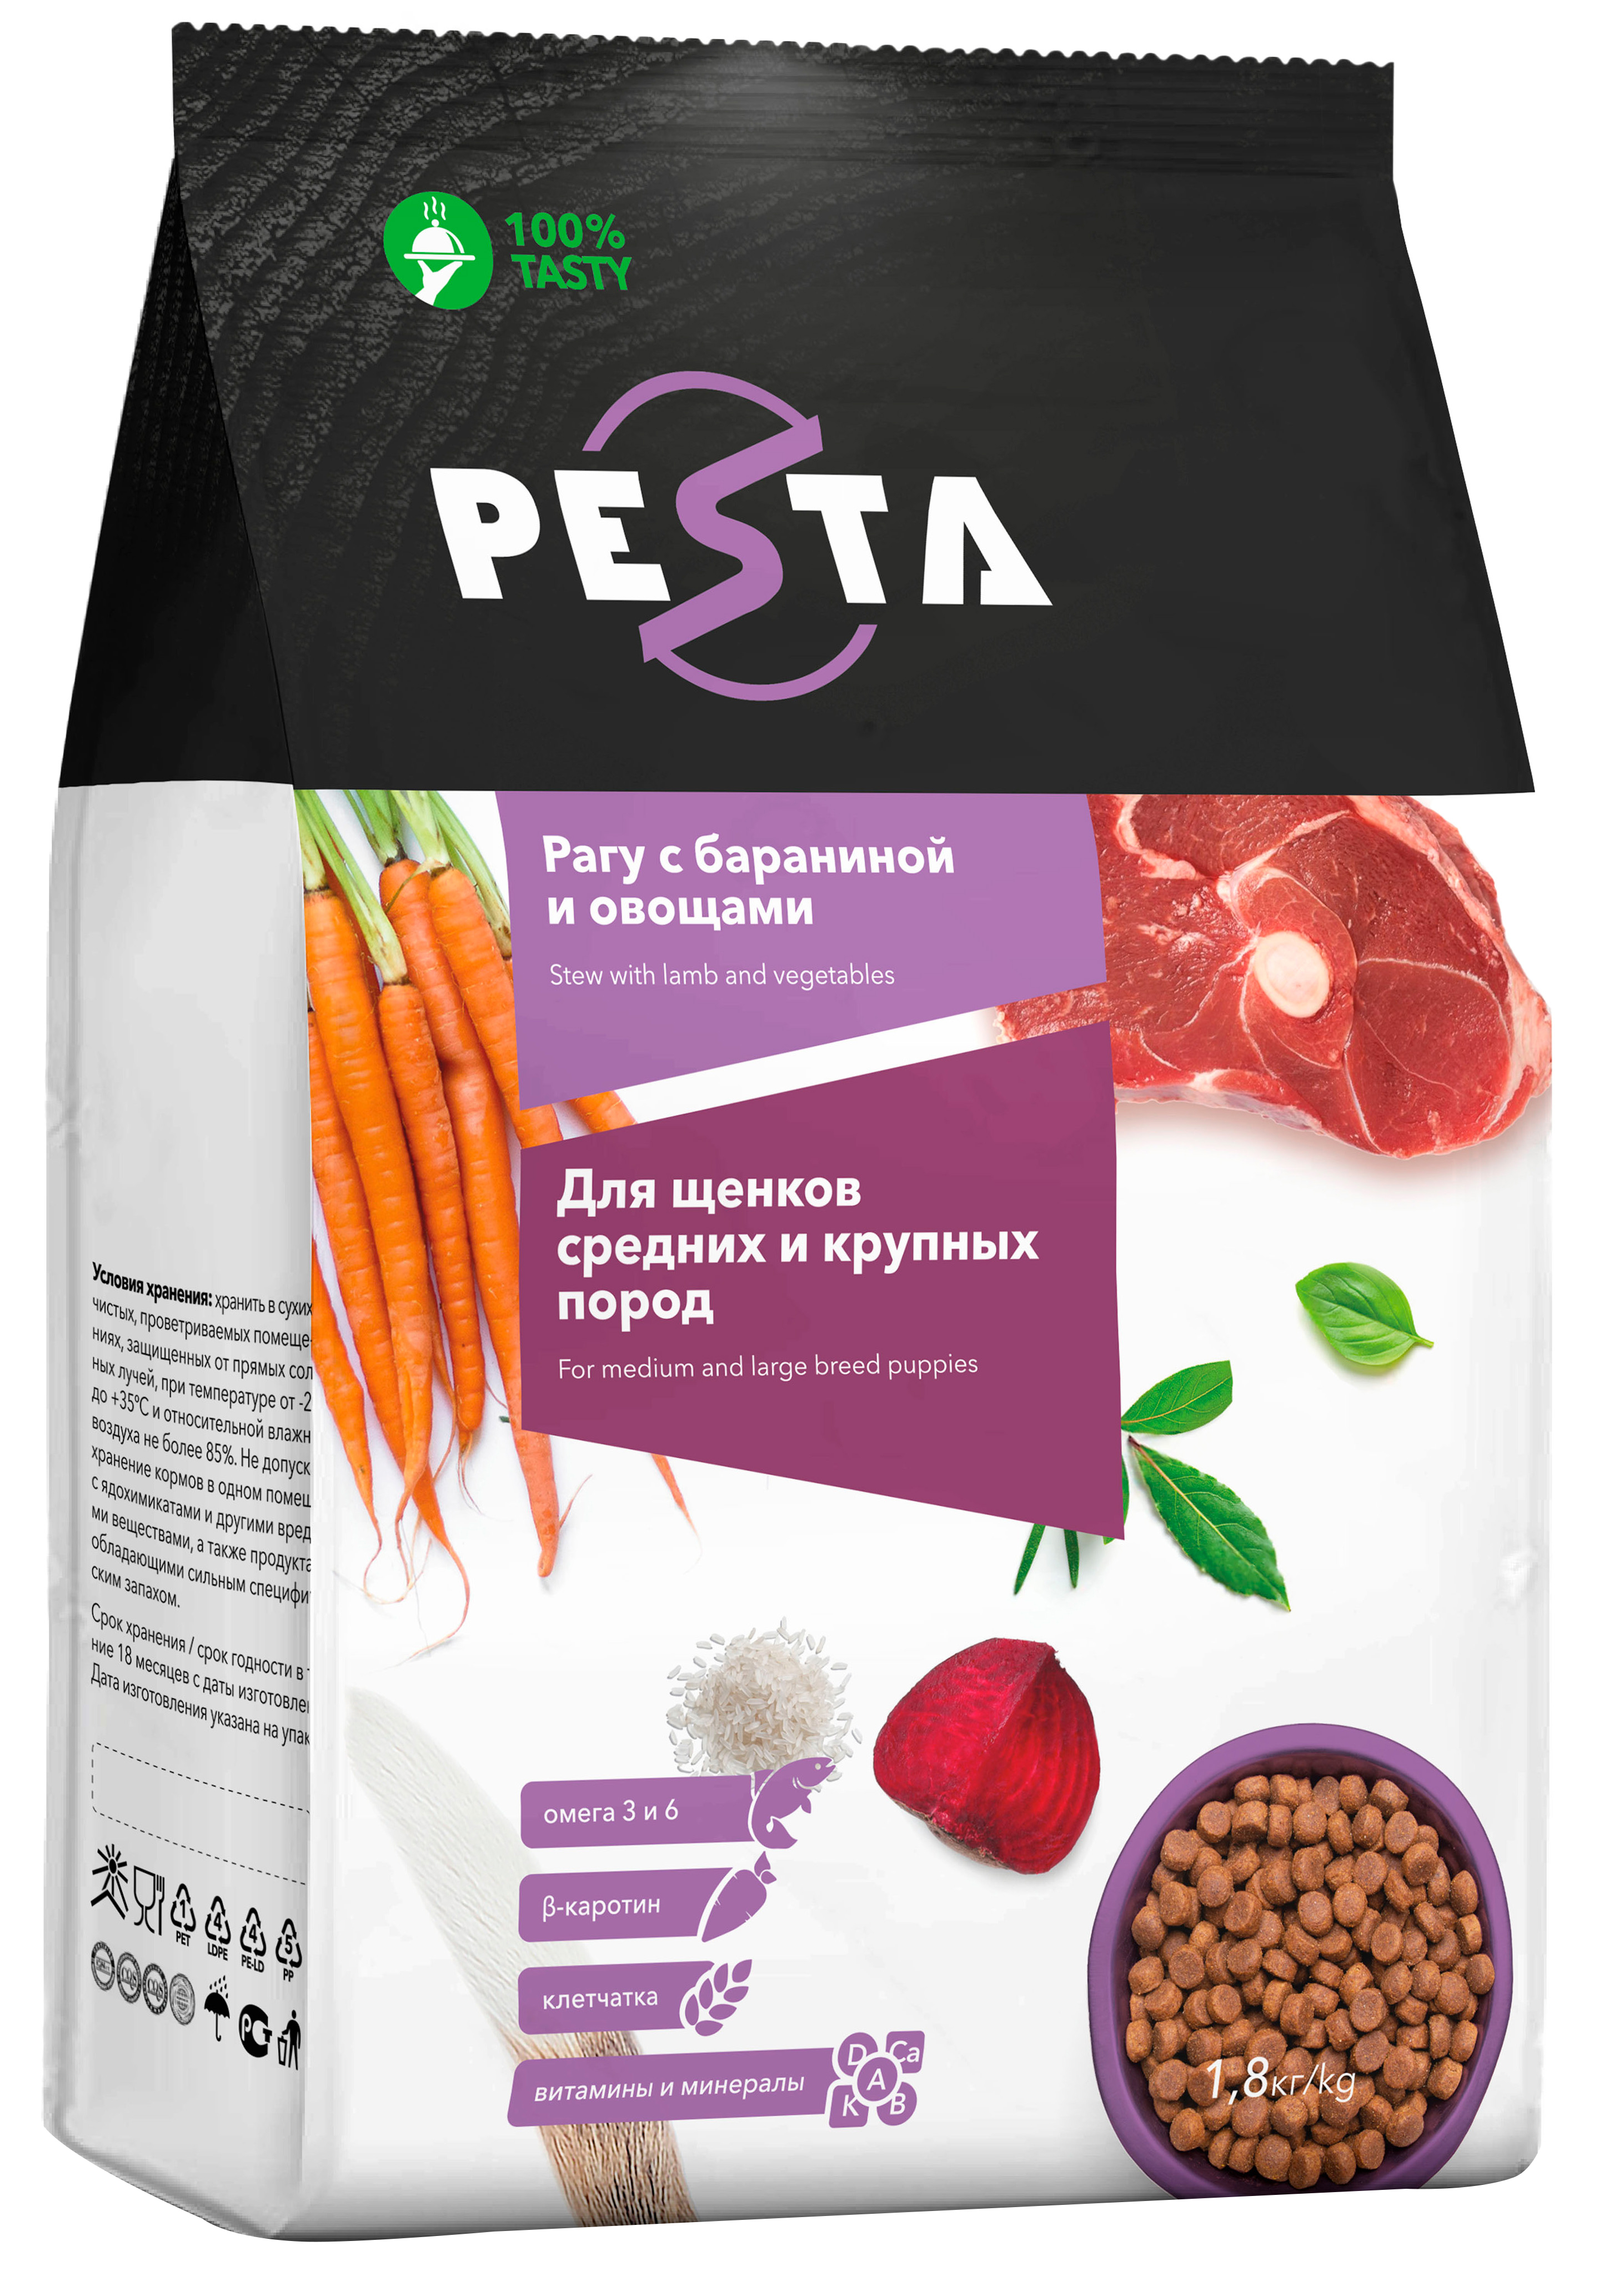 Сухой корм для щенков Pesta, для средних и крупных пород, с бараниной и овощами, 1,8кг